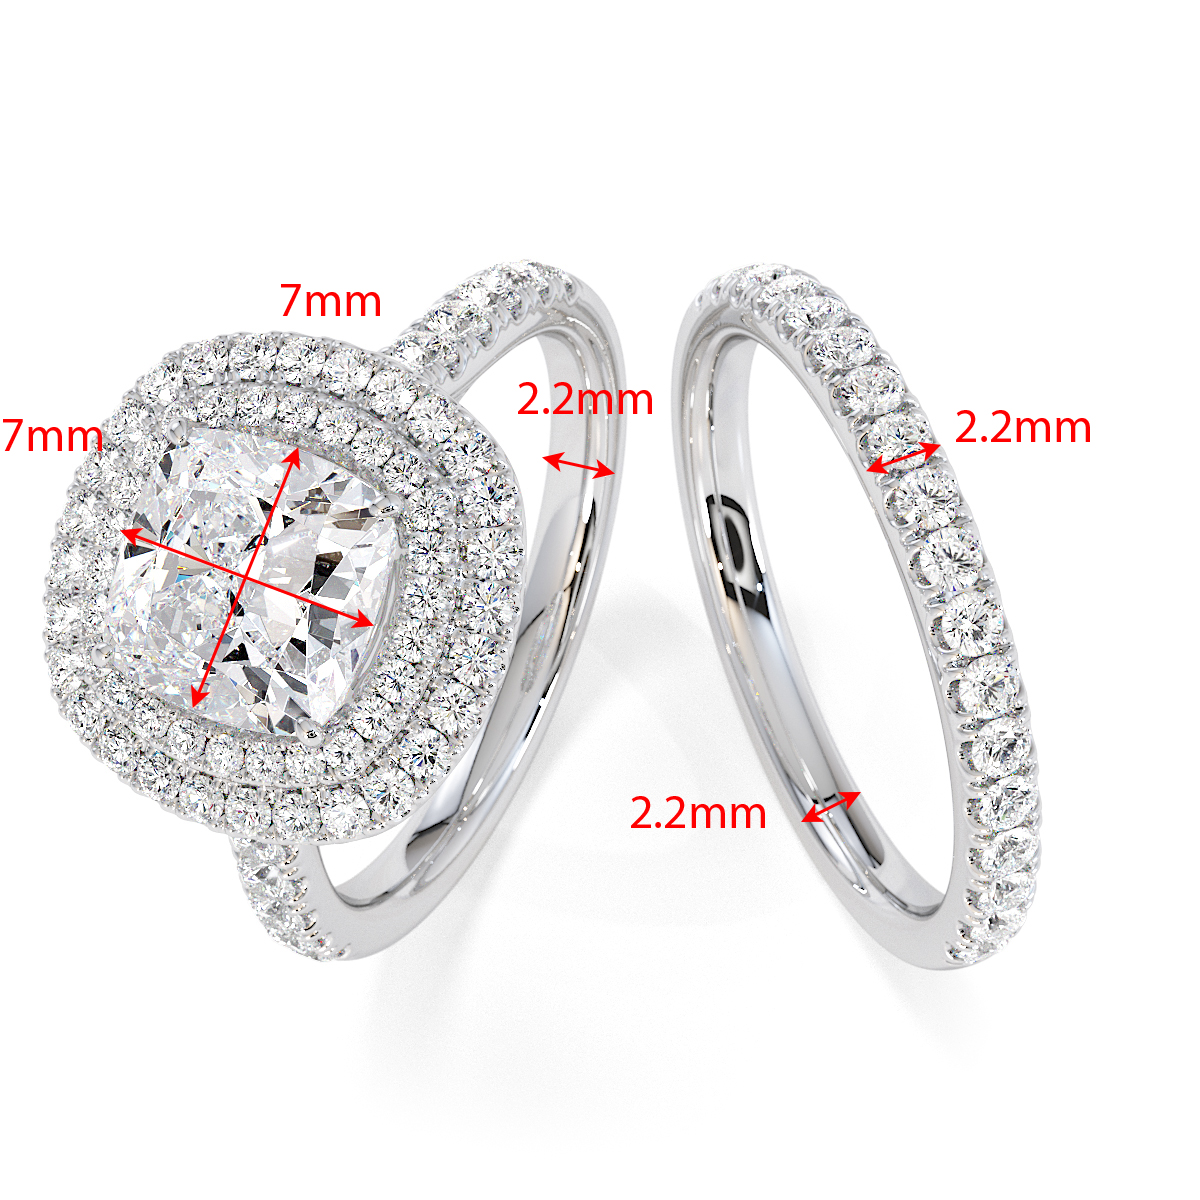 Gold / Platinum Tanzanite and Diamond Engagement Ring RZ3405